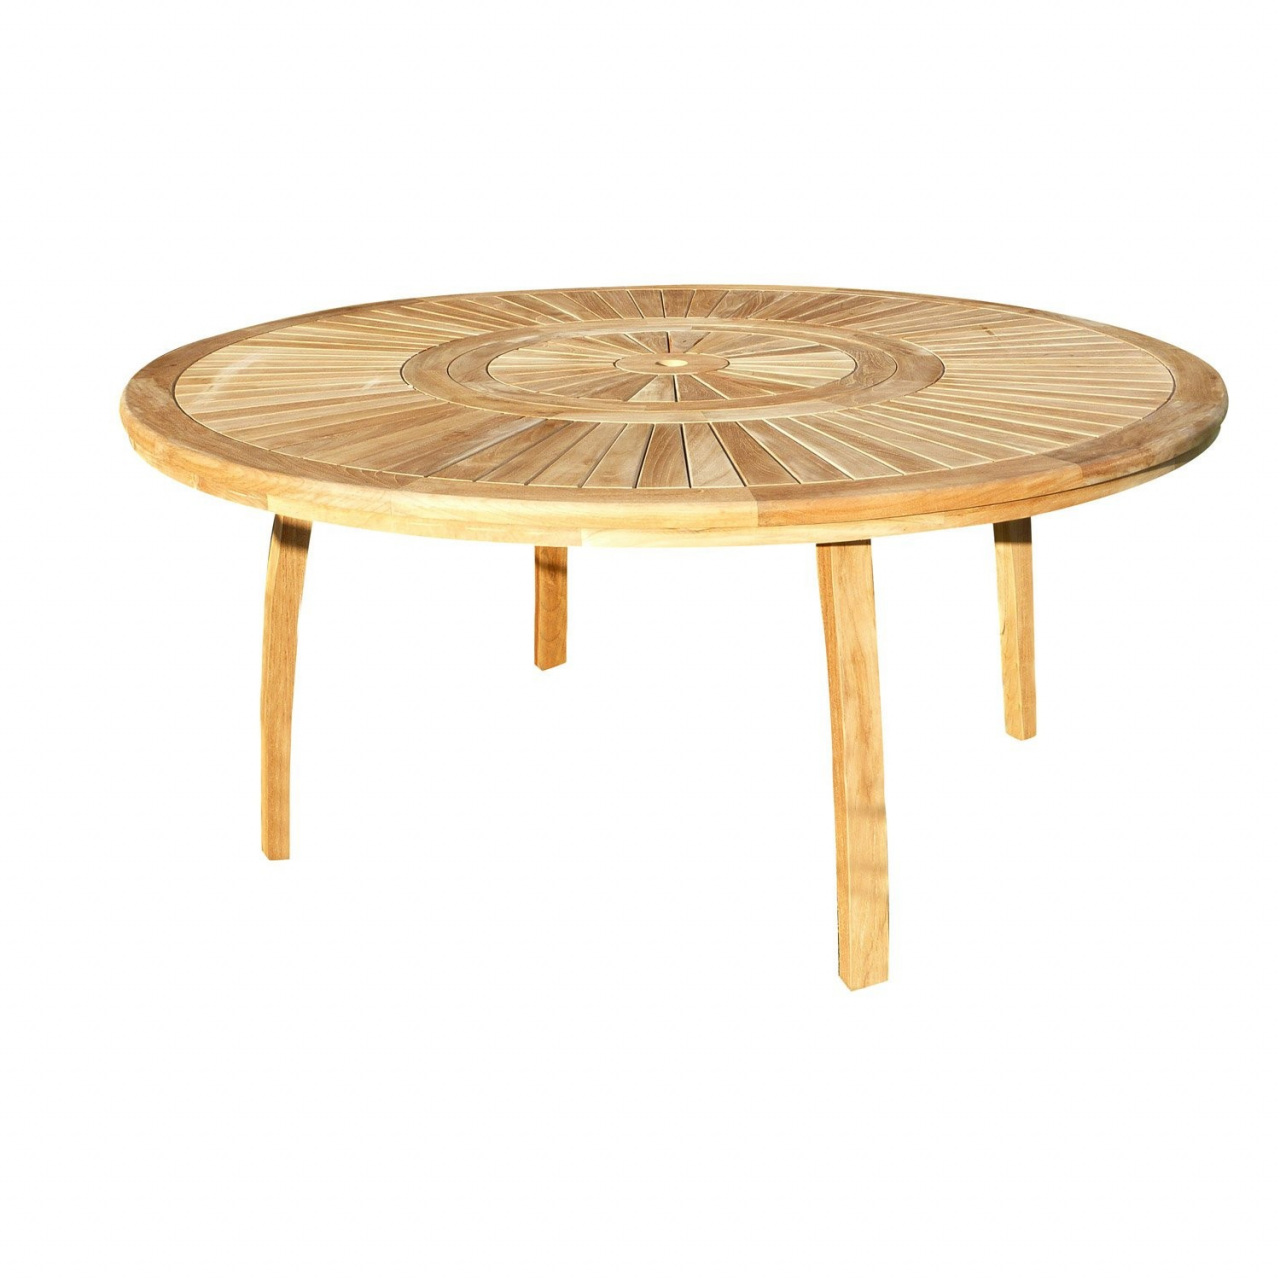 Table basse ronde bois exterieur